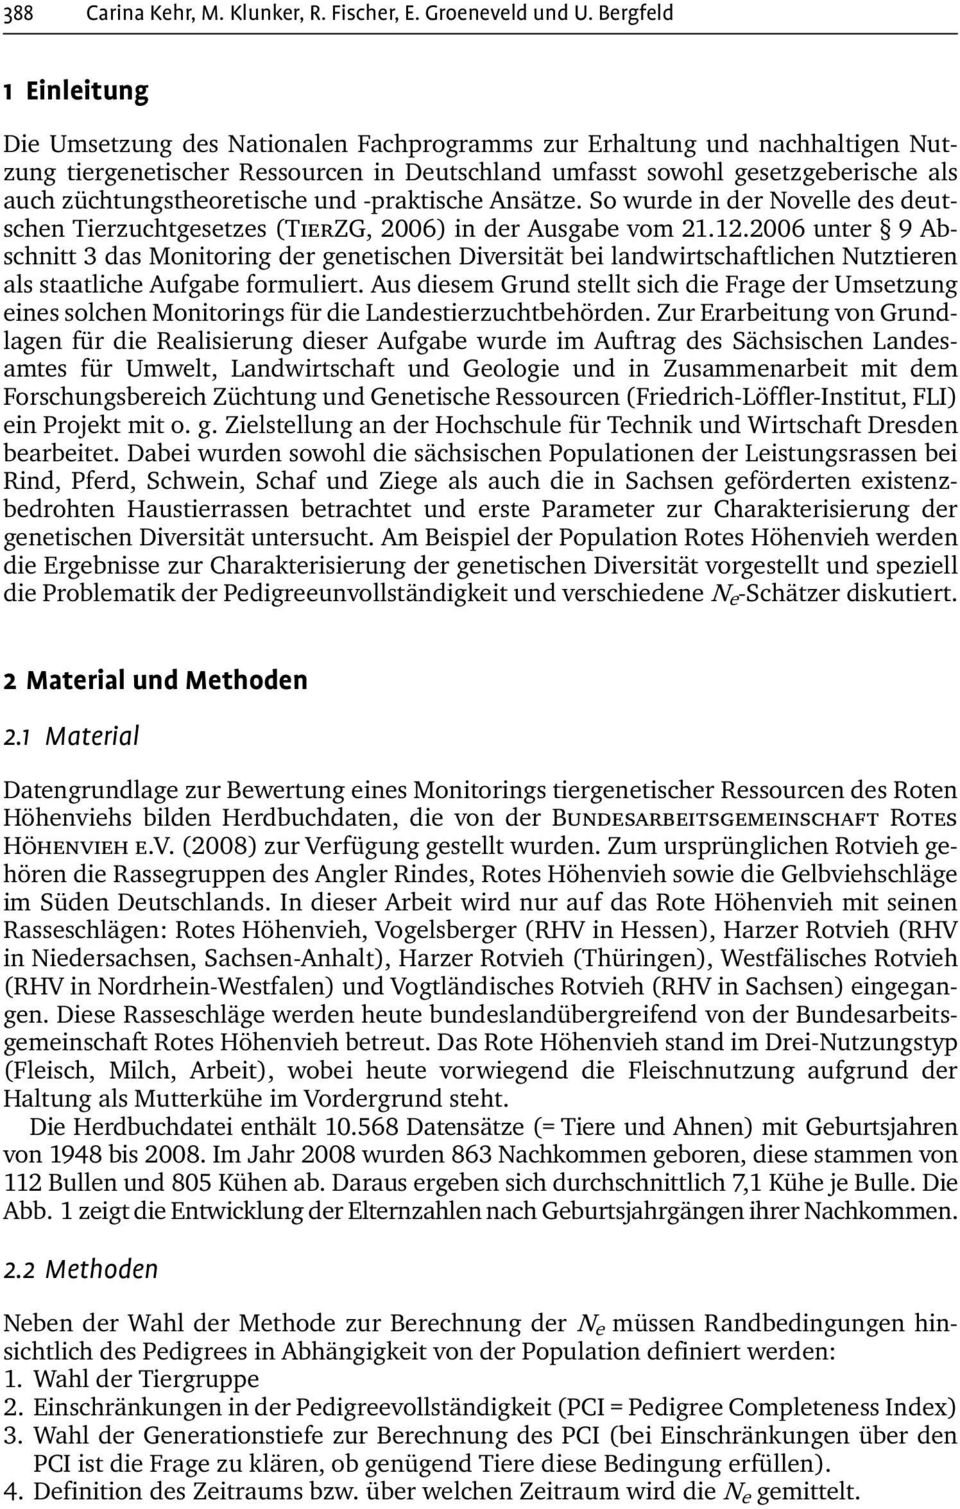 züchtungstheoretische und -praktische Ansätze. So wurde in der Novelle des deutschen Tierzuchtgesetzes (TierZG, 2006) in der Ausgabe vom 21.12.